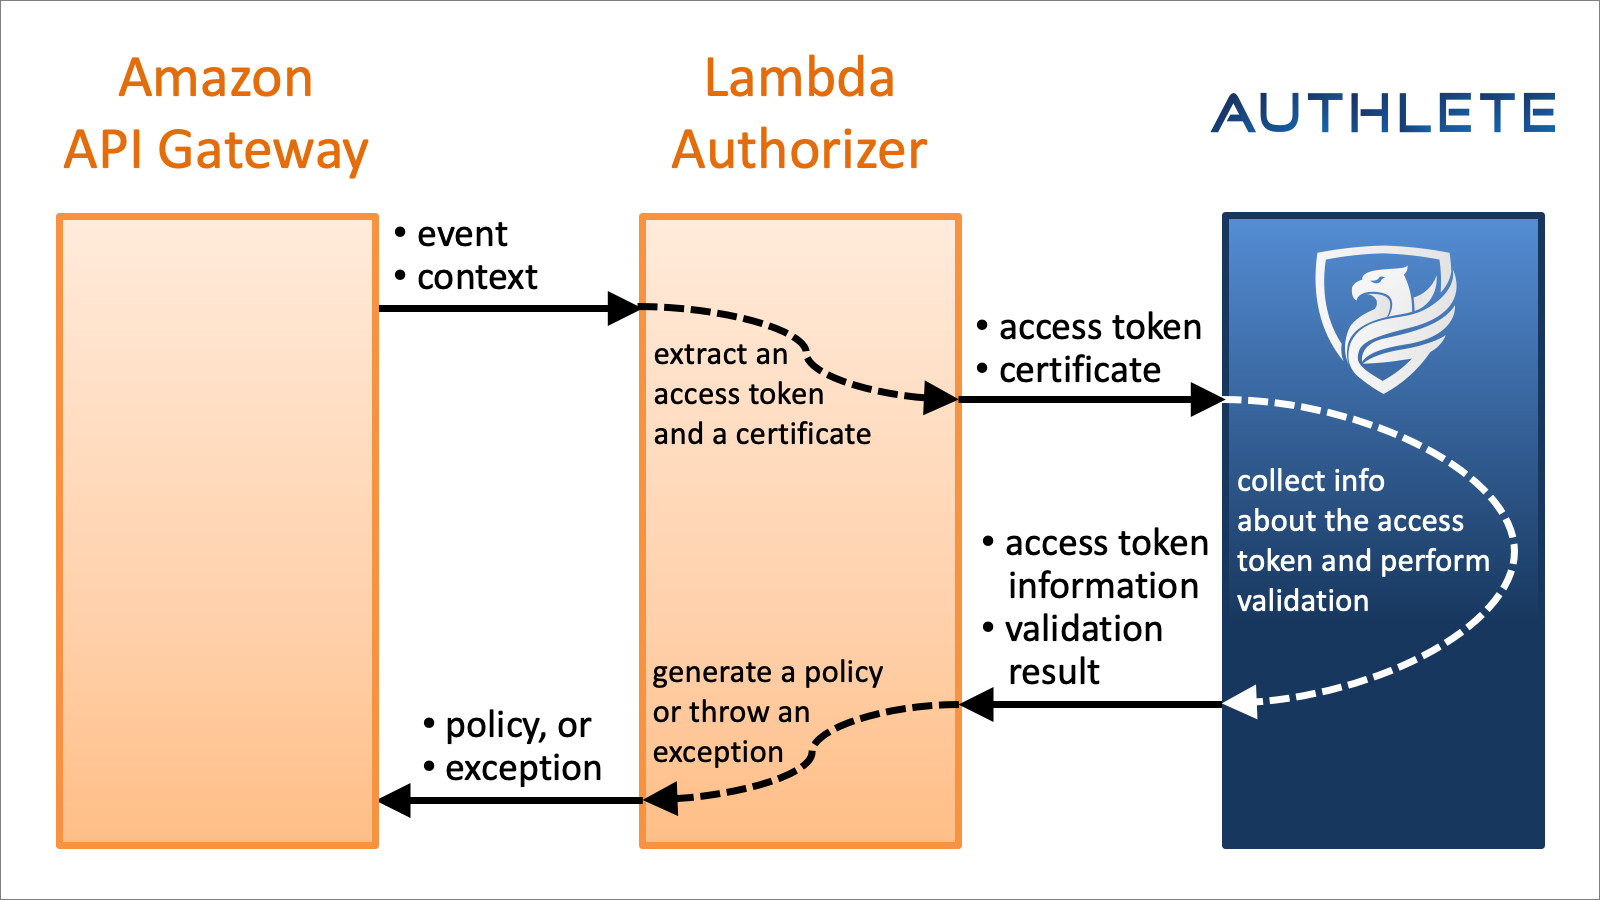 Amazon API Gateway, Lambda Authorizer and Authlete